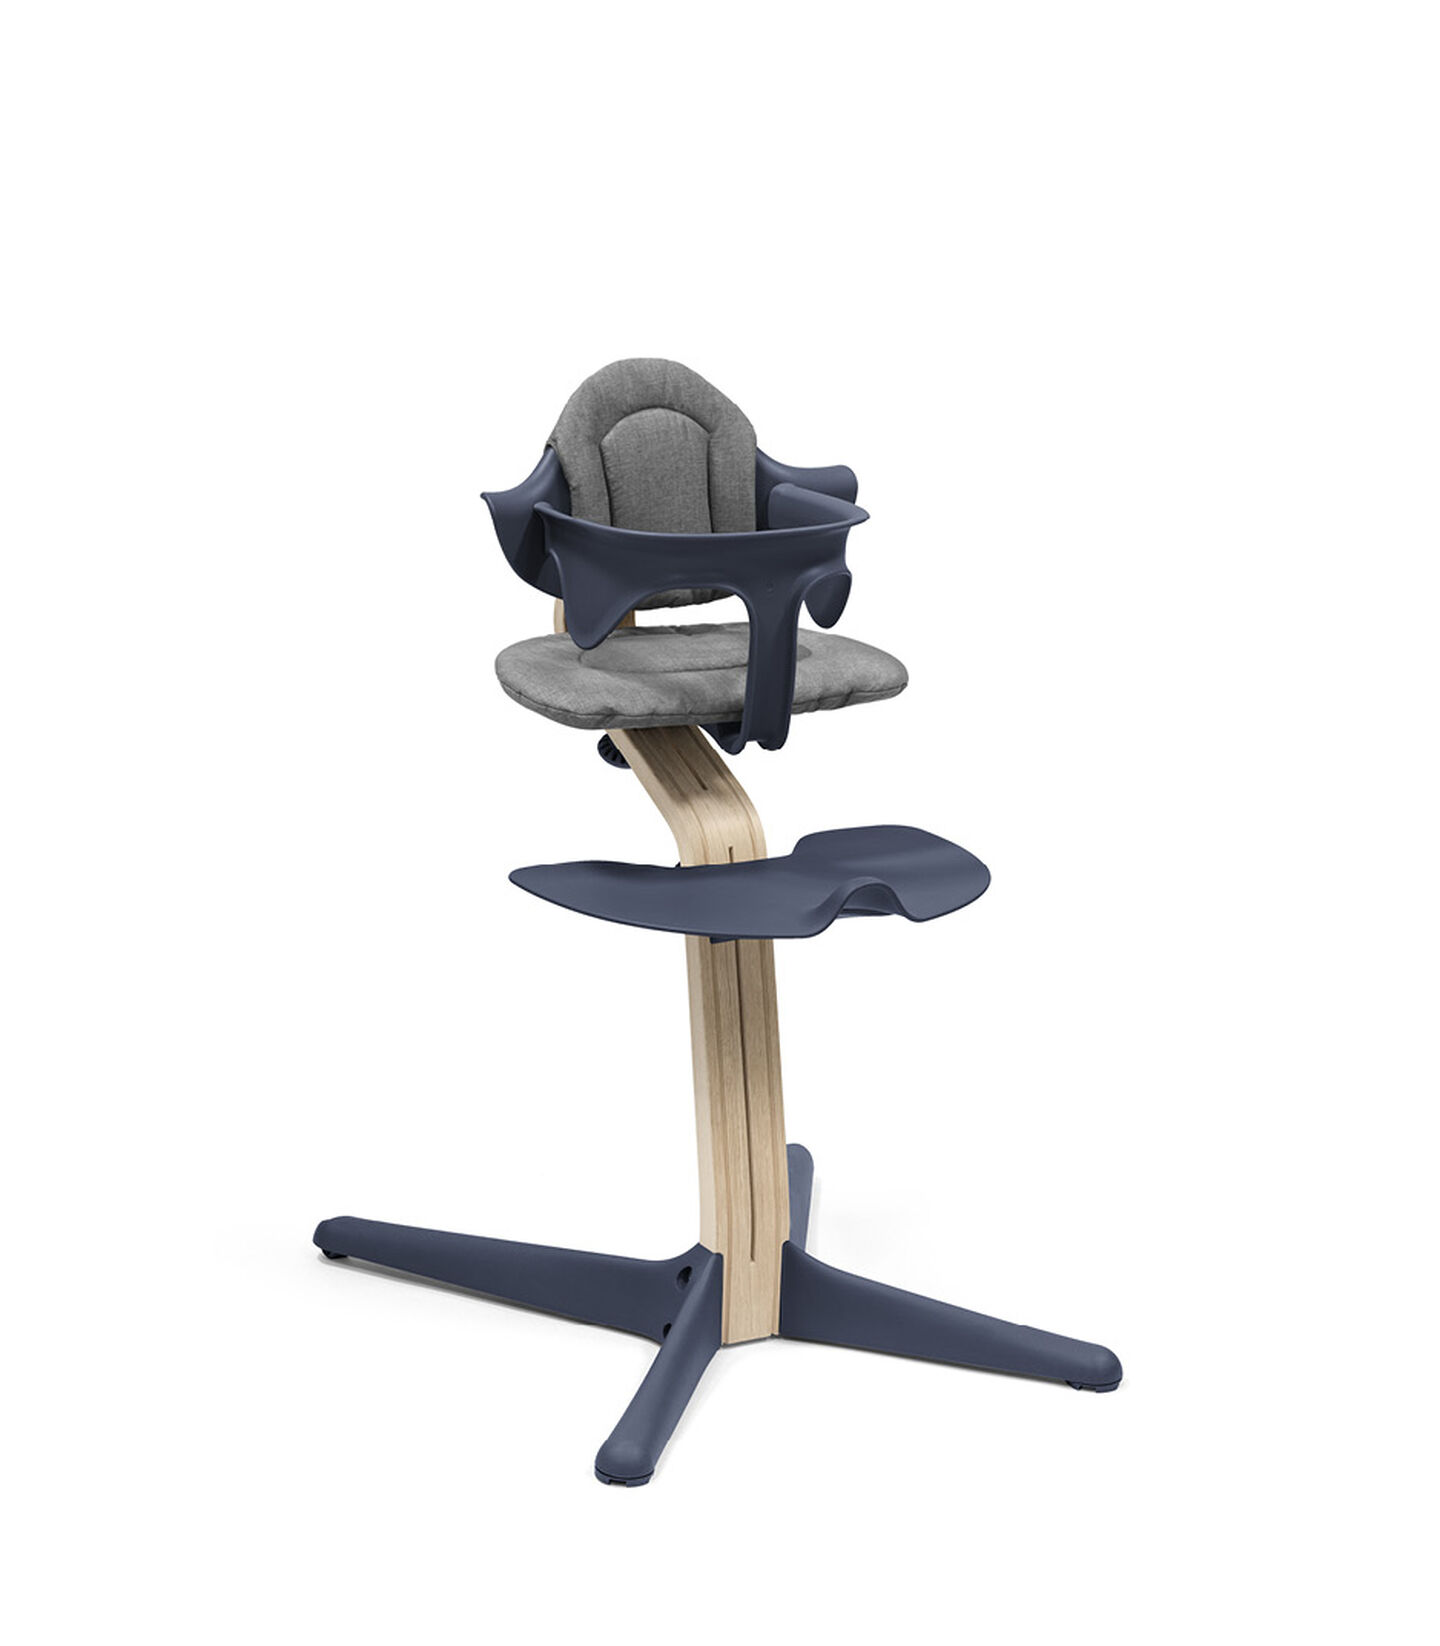 Stokke® Nomi® stoel Natural Navy, Navy, mainview view 2